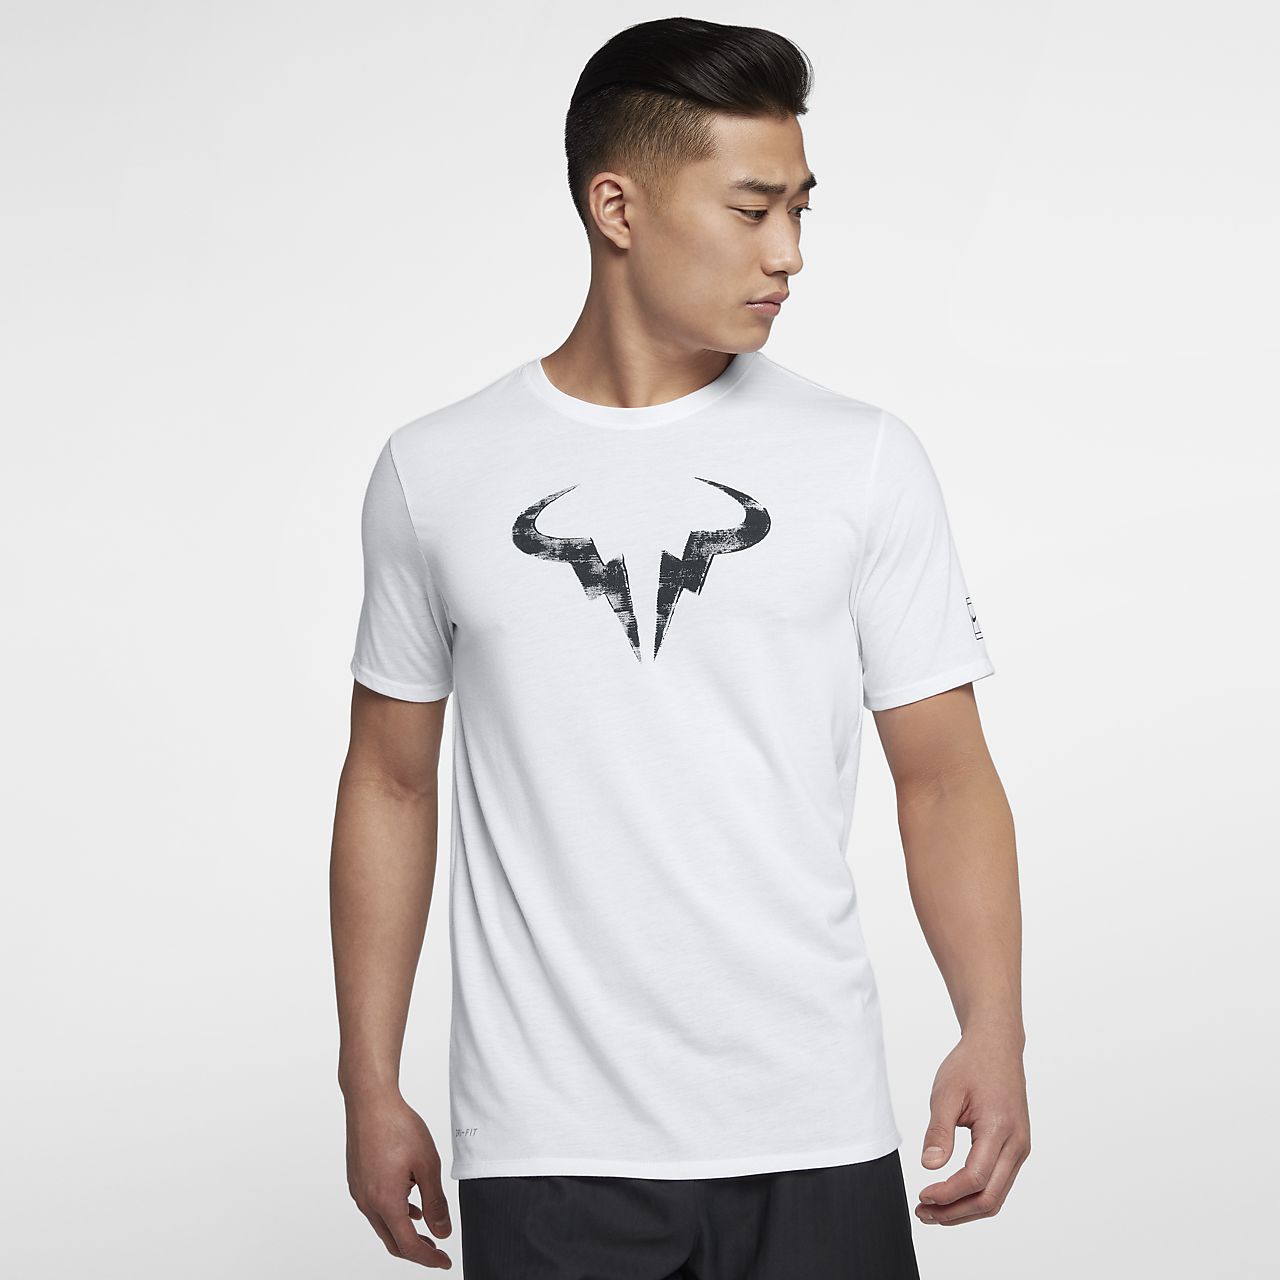 Tennis T Shirts Nike Rldm - roblox nike t shirt free rldm